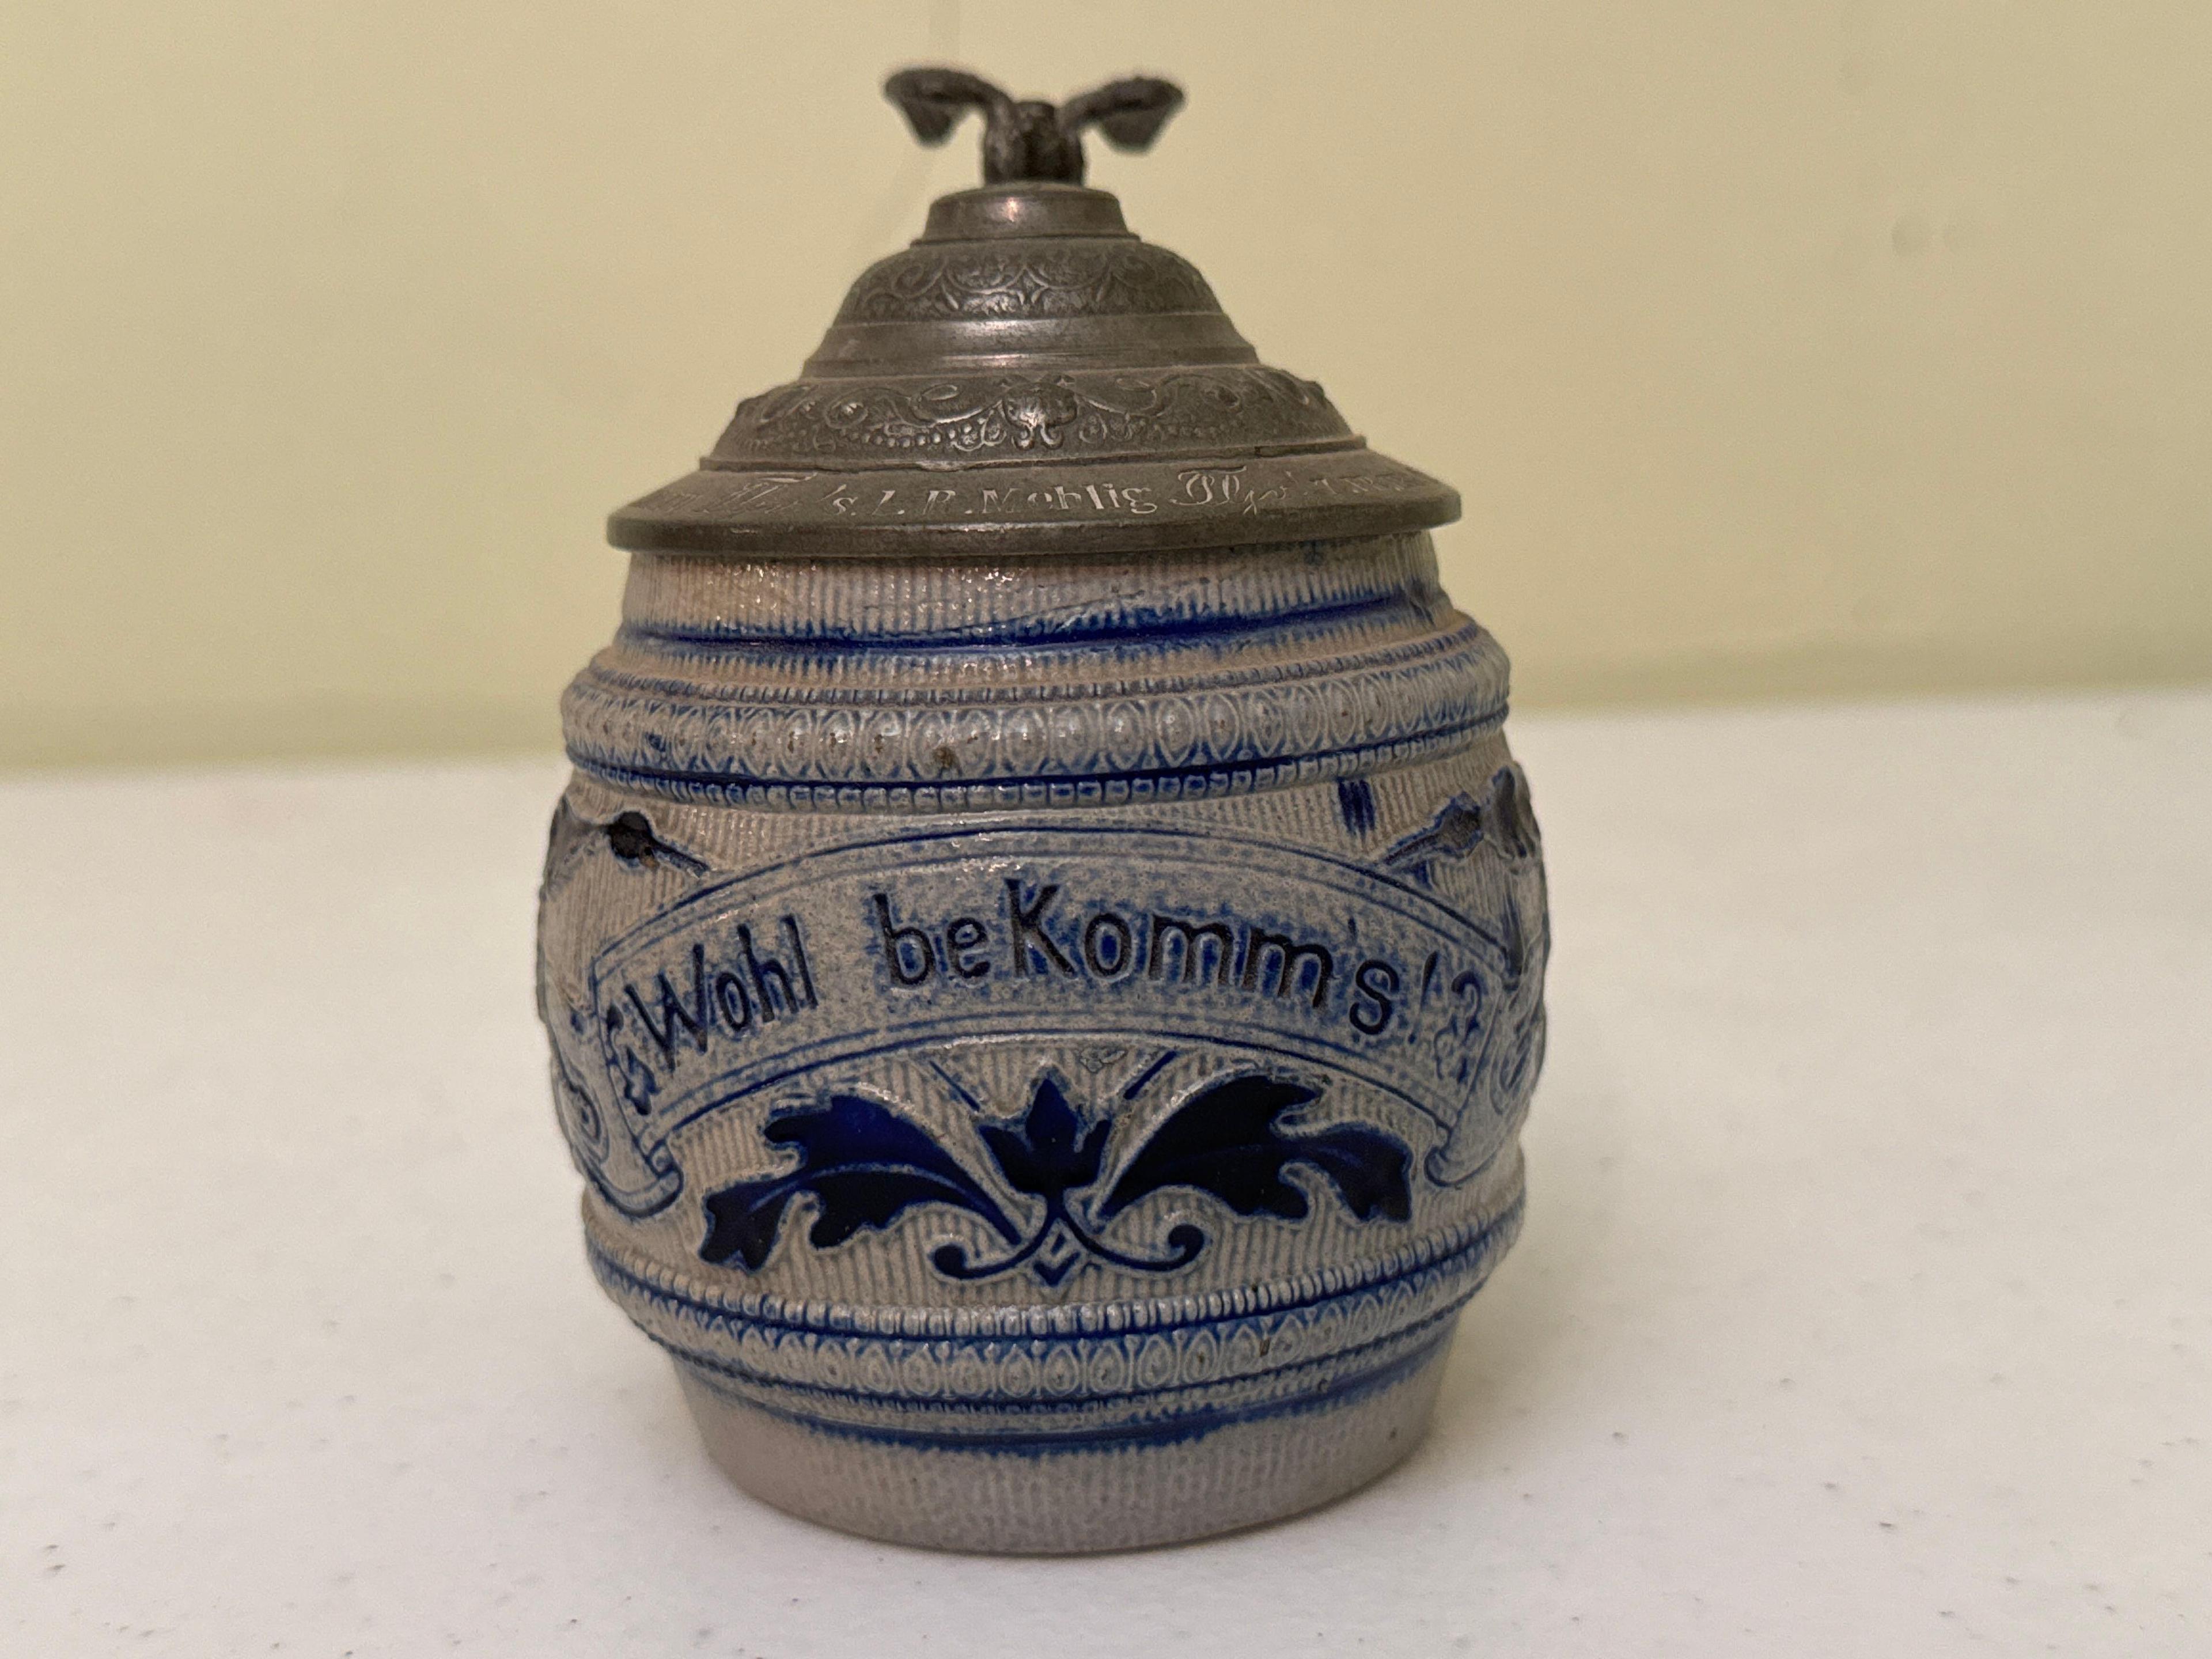 Vintage Ceramic Wohl beKomms Beer Stein with Lid